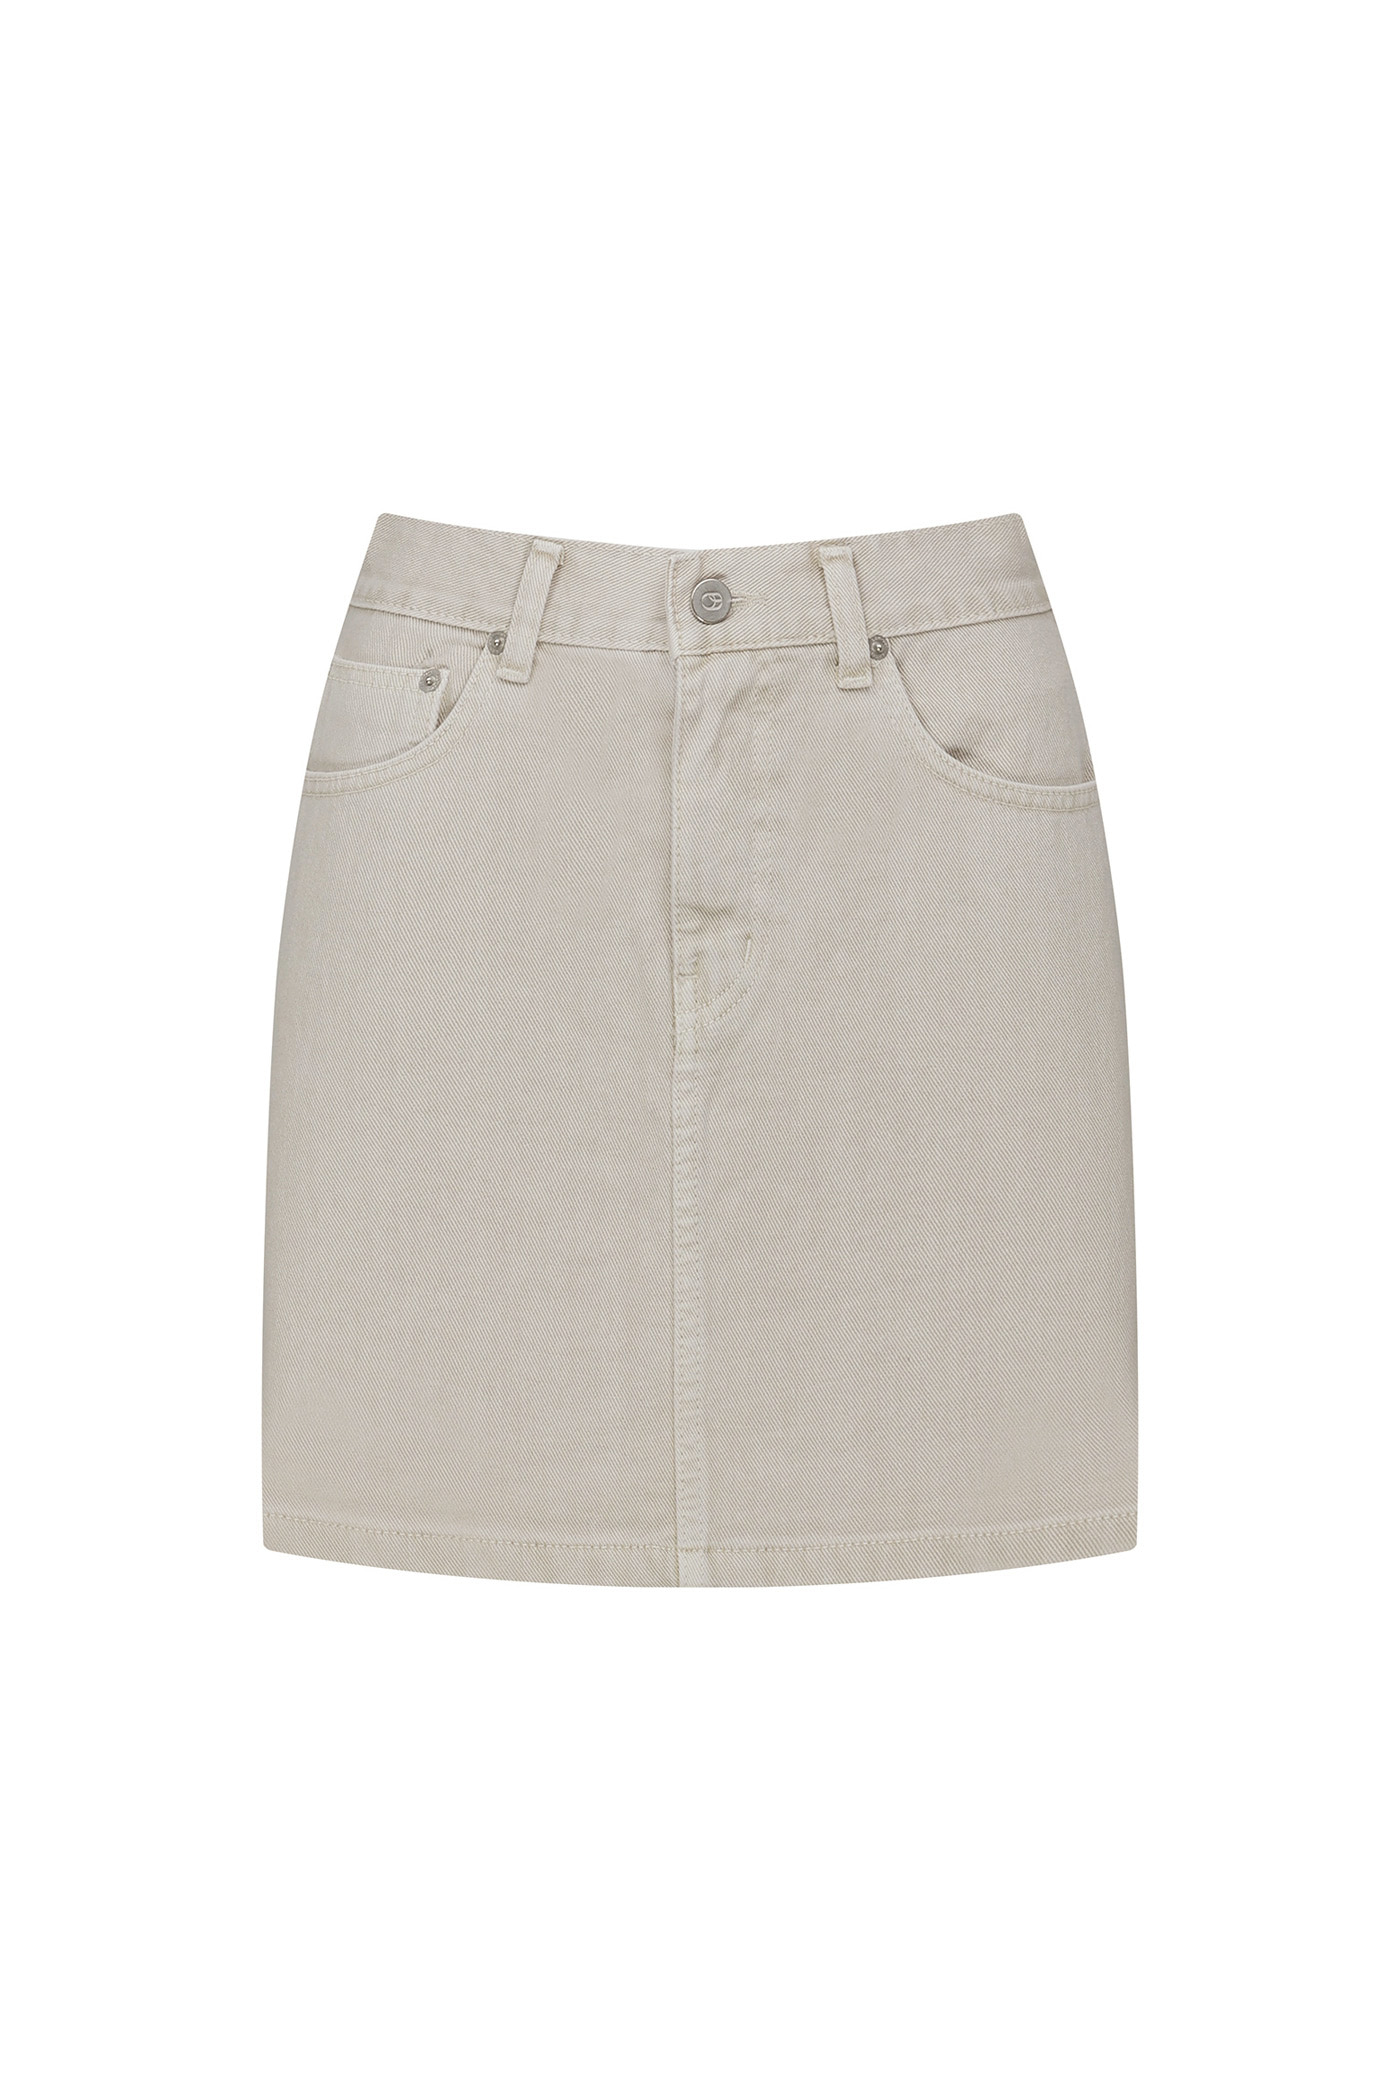 [SAMPLE]Dyeing Mini Denim Skirt-Beige